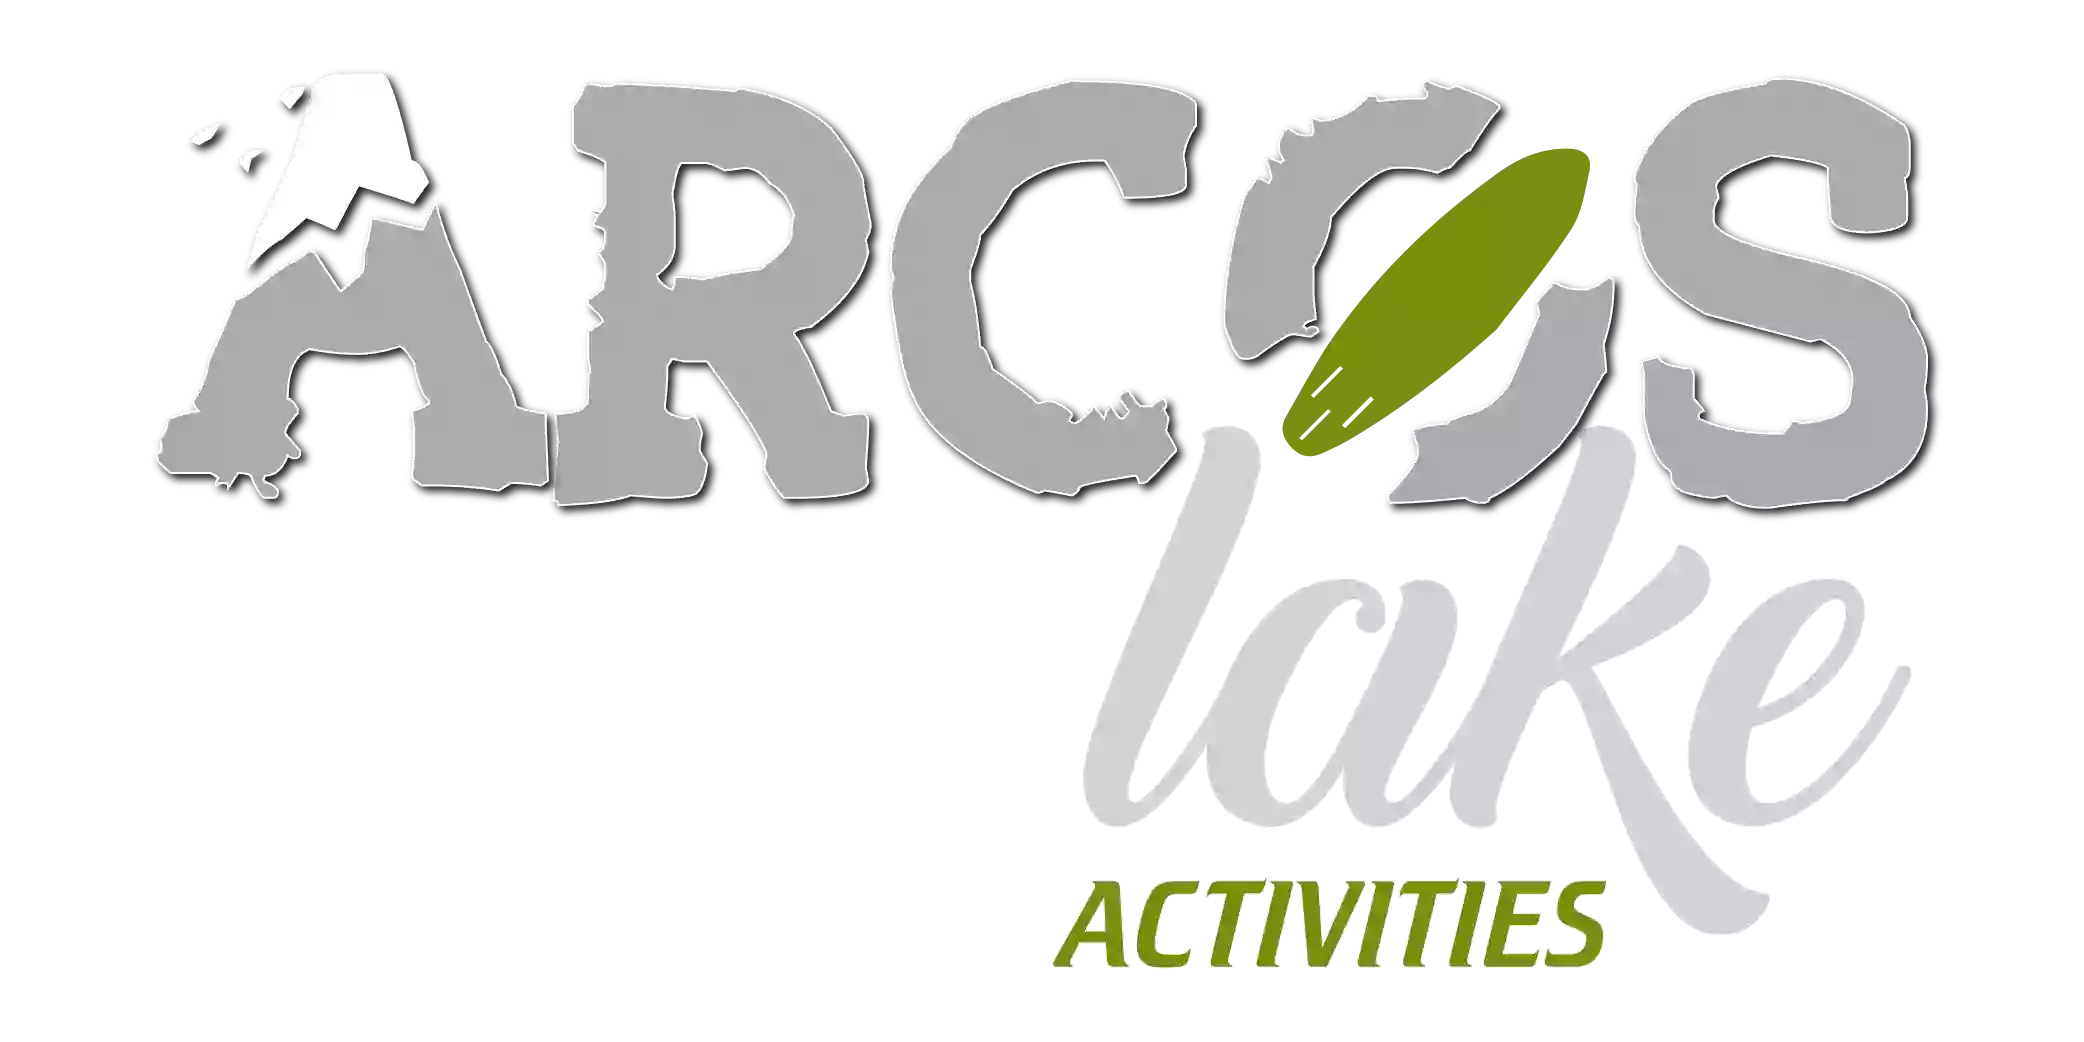 ARCOS LAKE ACTIVITIES. LAGO DE ARCOS